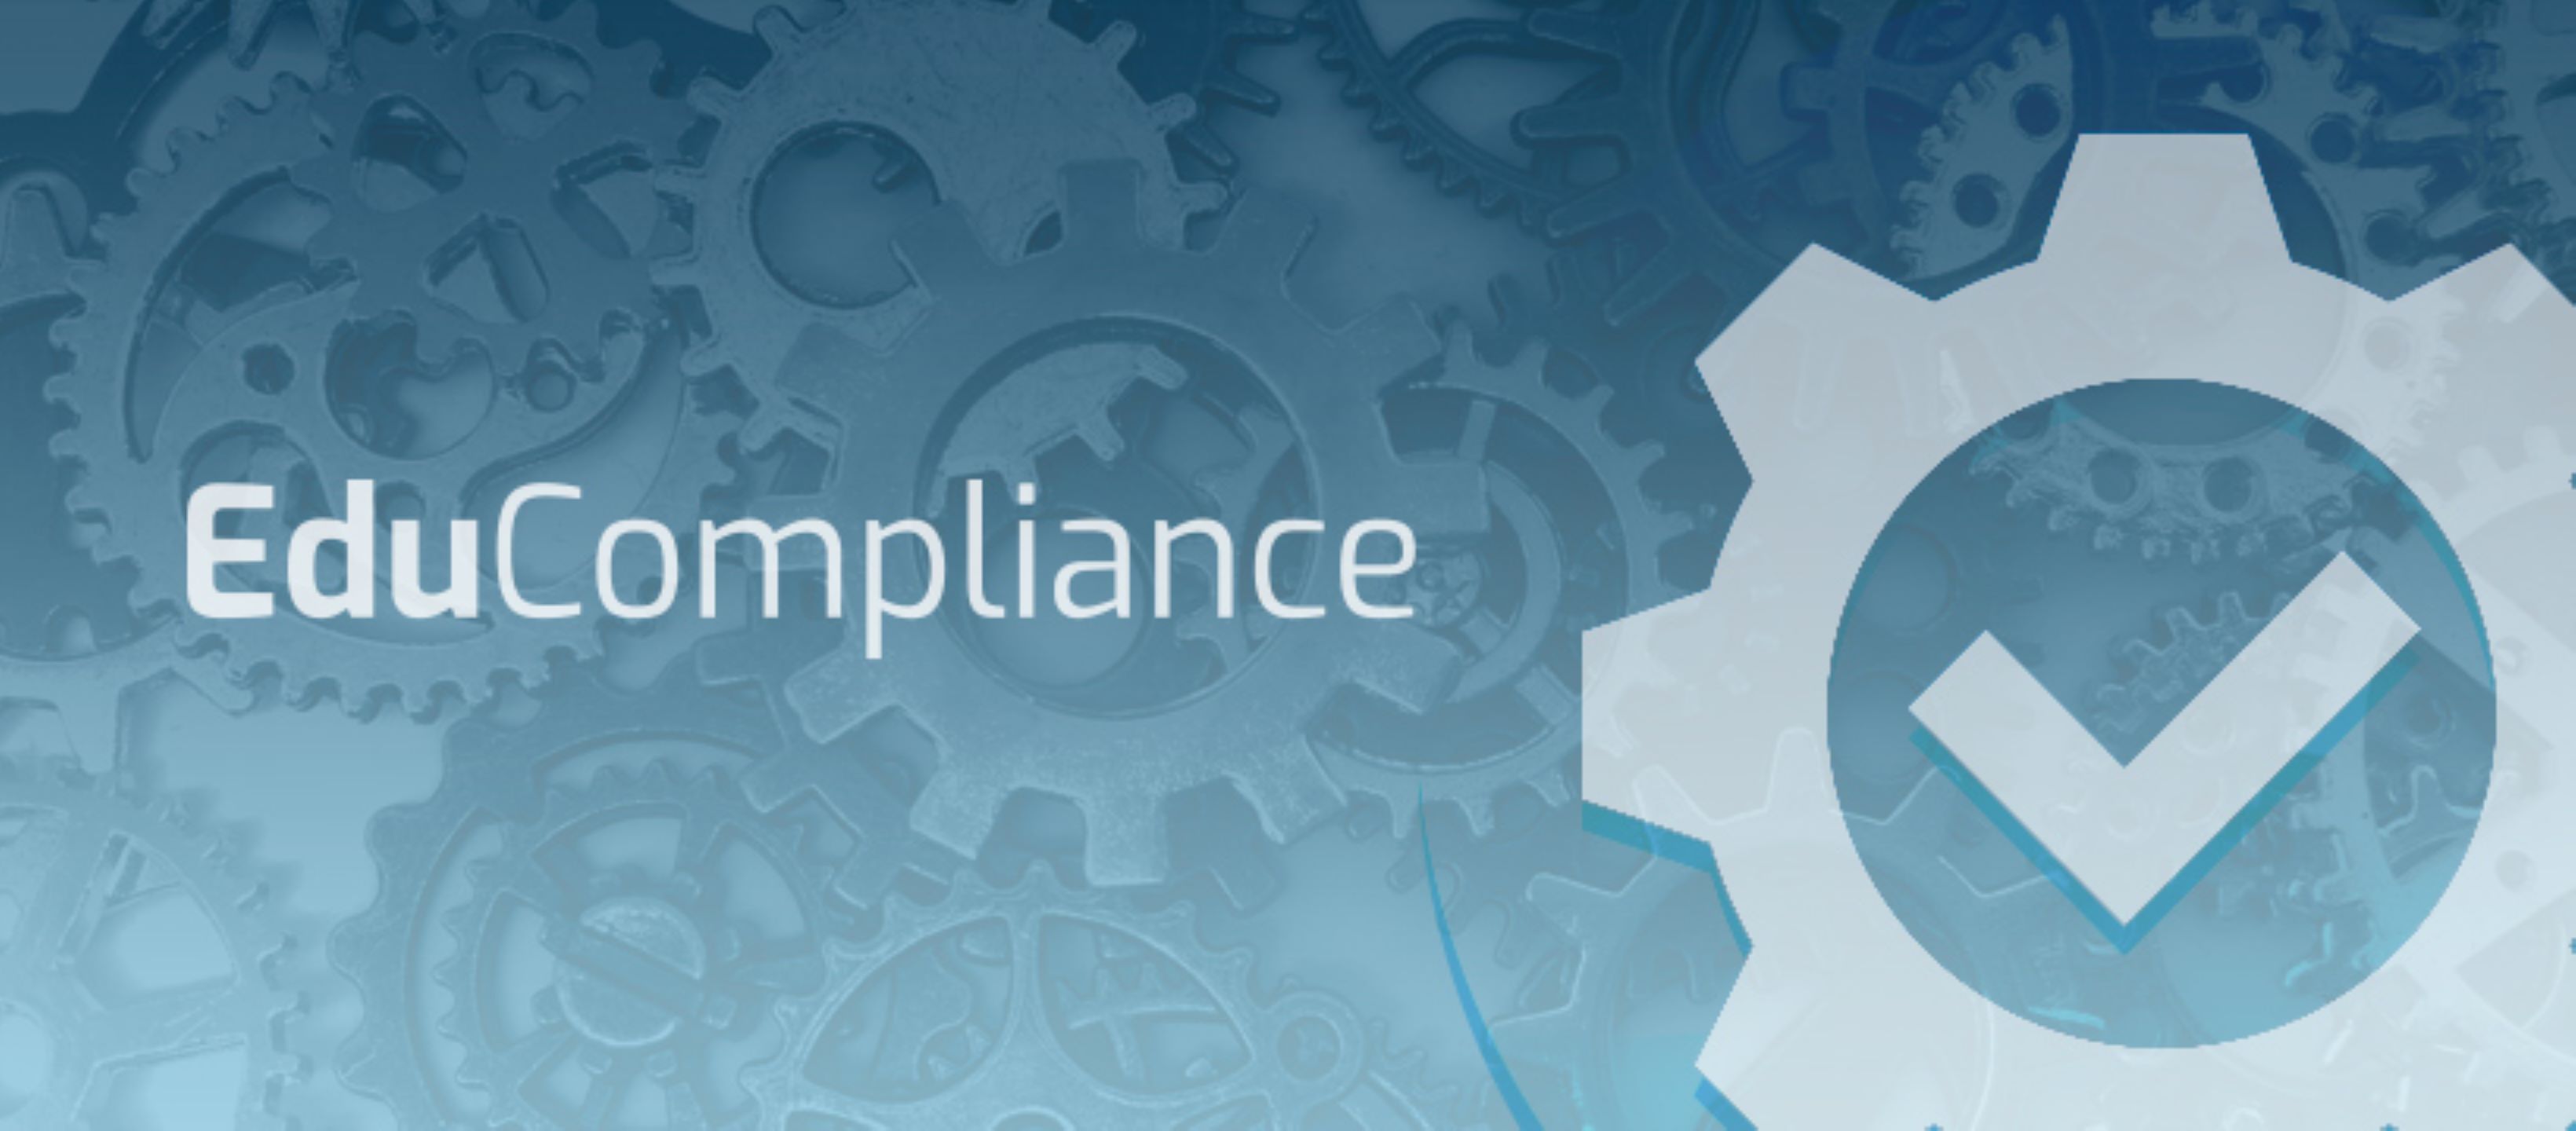 Grupo de Pesquisa em Compliance e Governança do Educompliance 2021